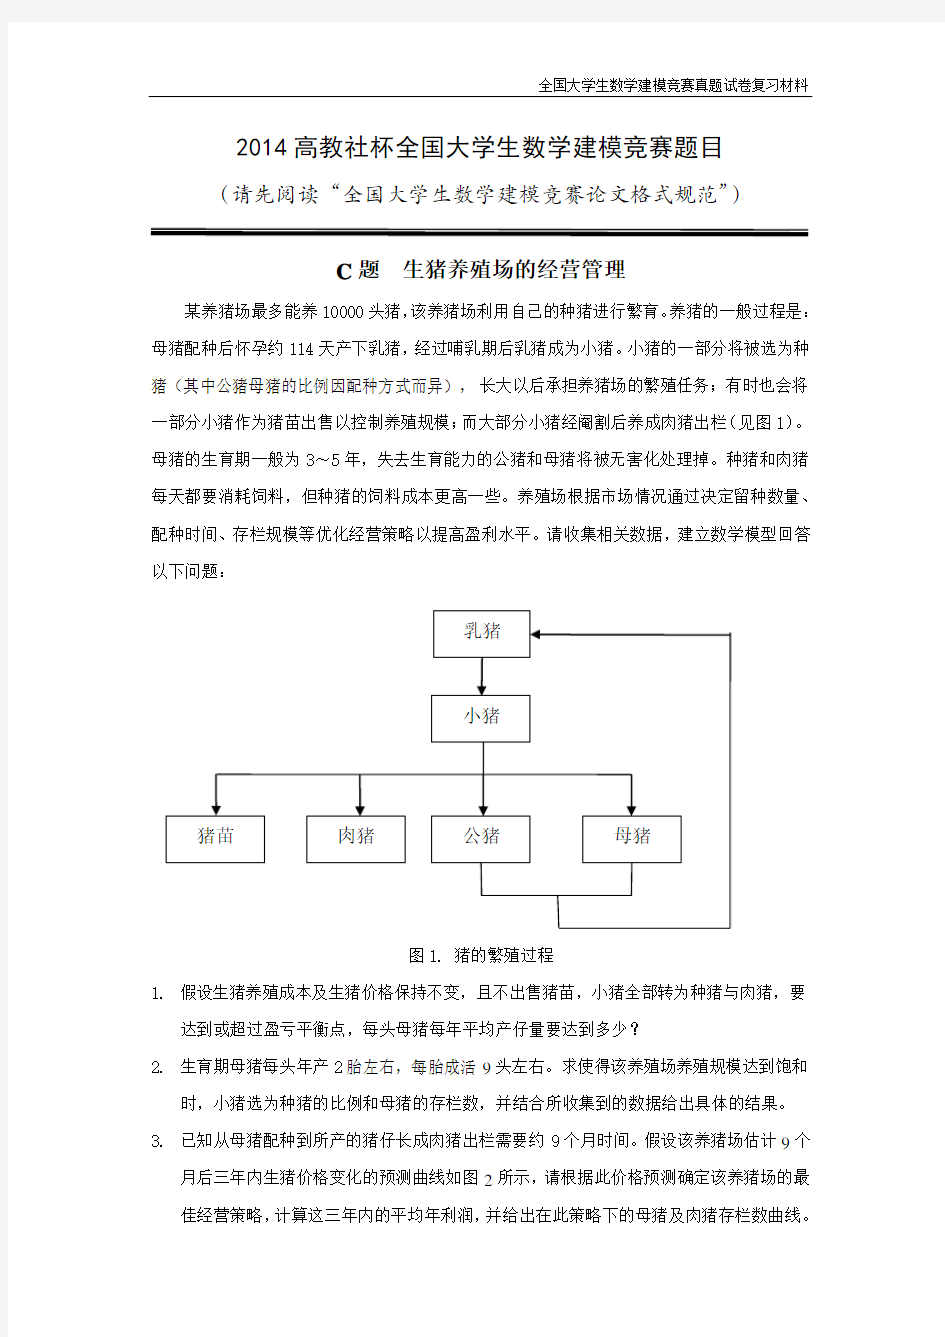 【2014年高教社杯全国大学生数学建模竞赛赛题C】CUMCM2014C-Chinese